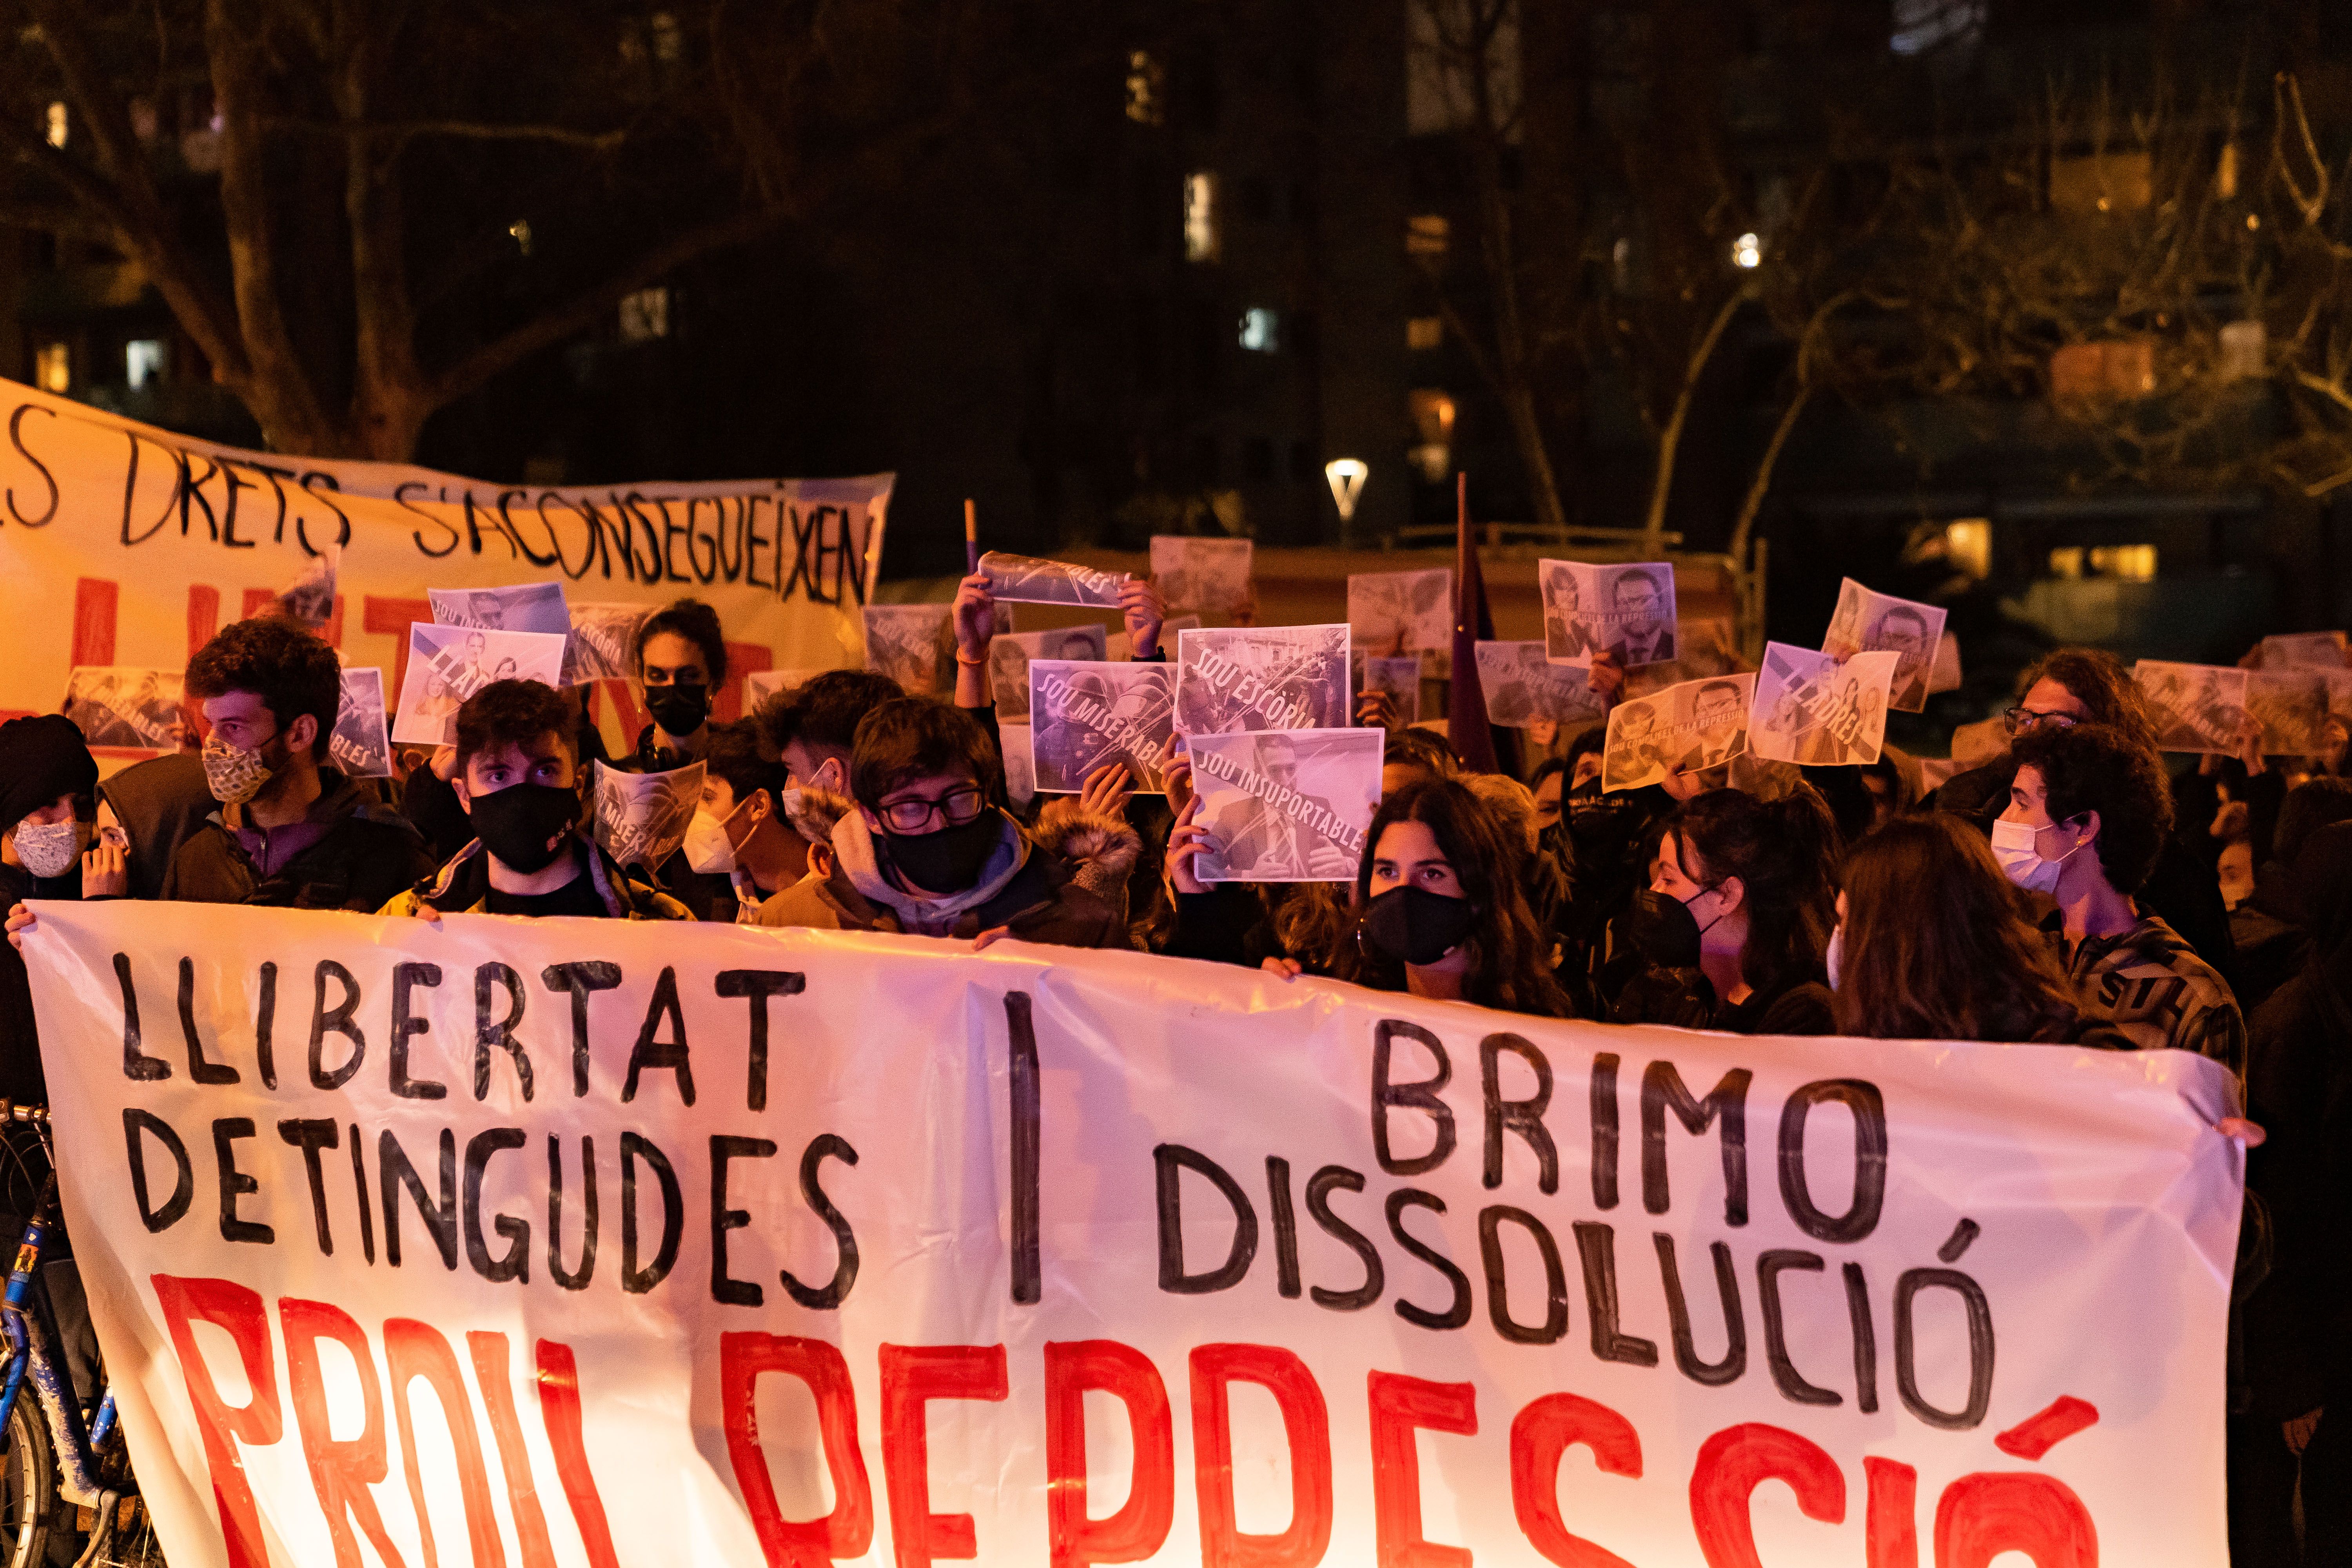 Manifestació contra "la brutalitat policial" a Sant Cugat. FOTO: Mariana Castel